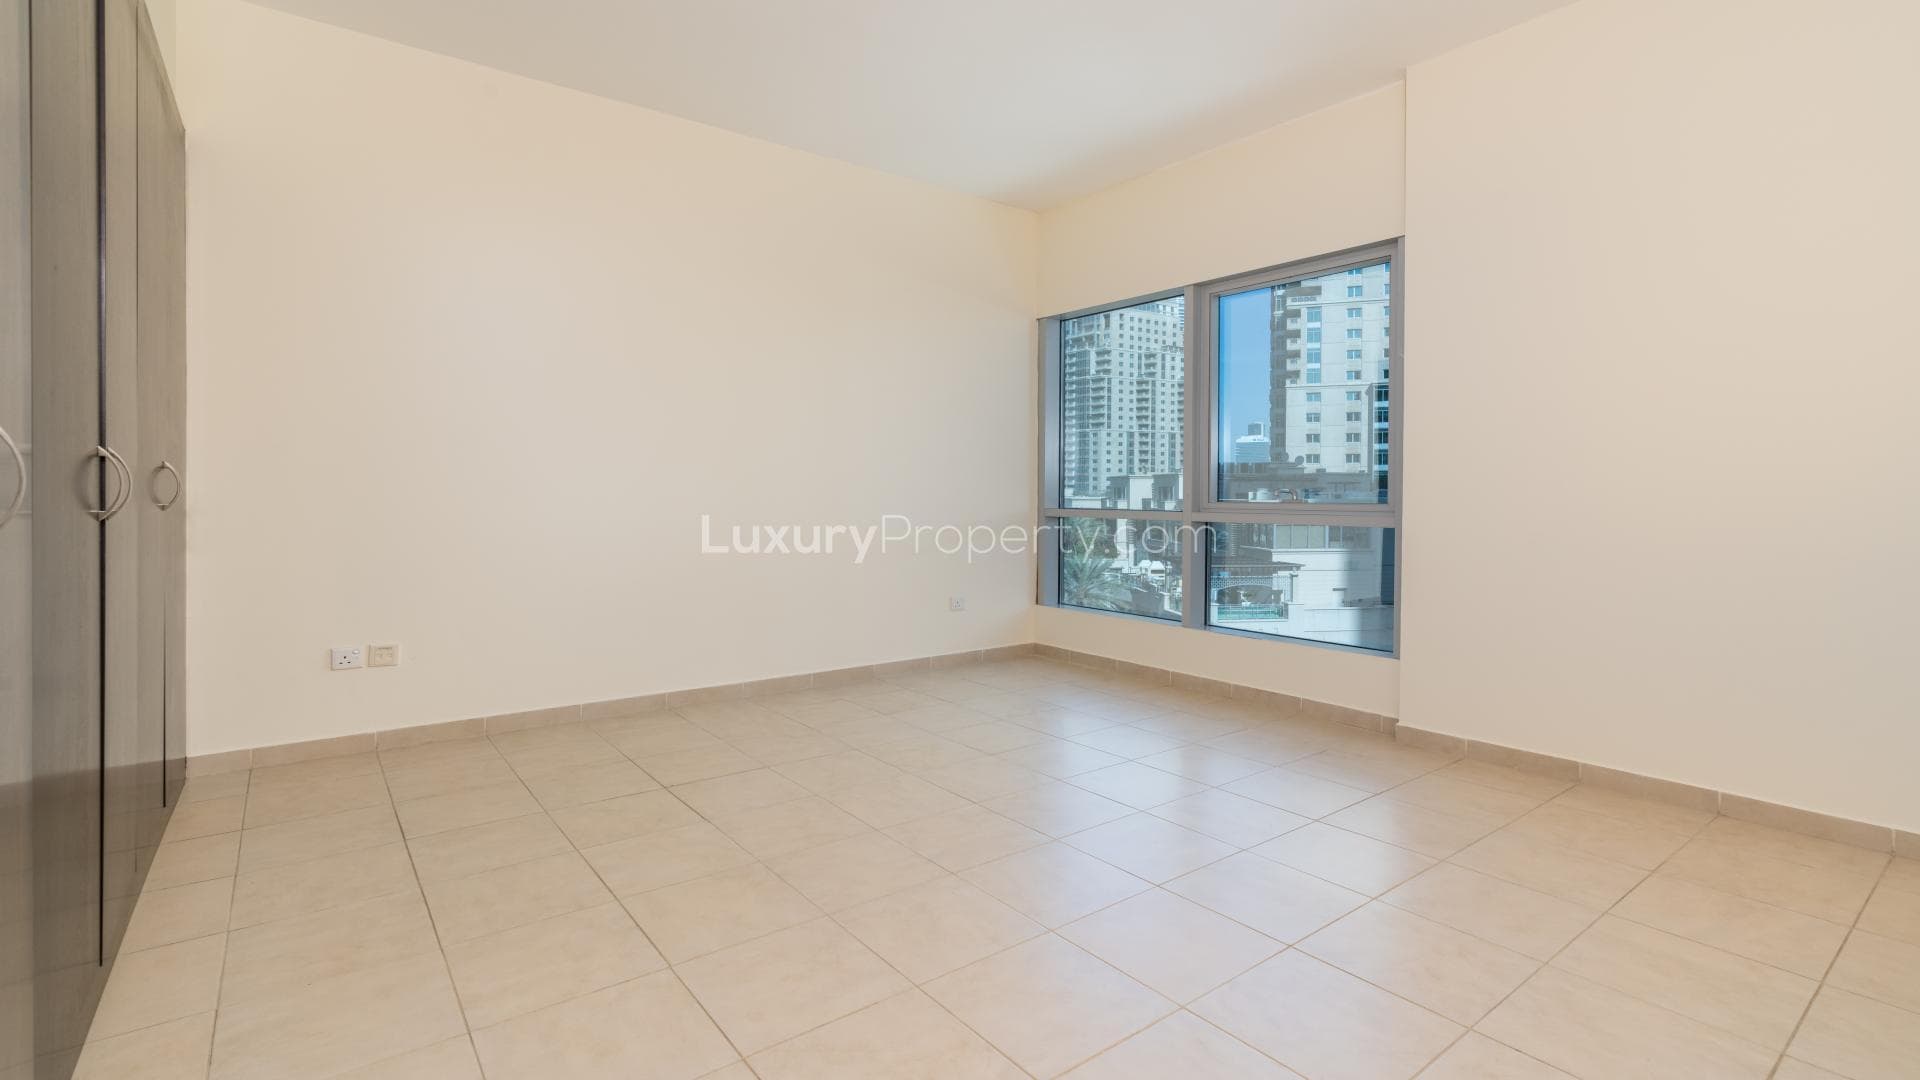 2 Bedroom Apartment For Rent Al Habtoor Tower Lp16576 2d4b696e0621f400.jpg